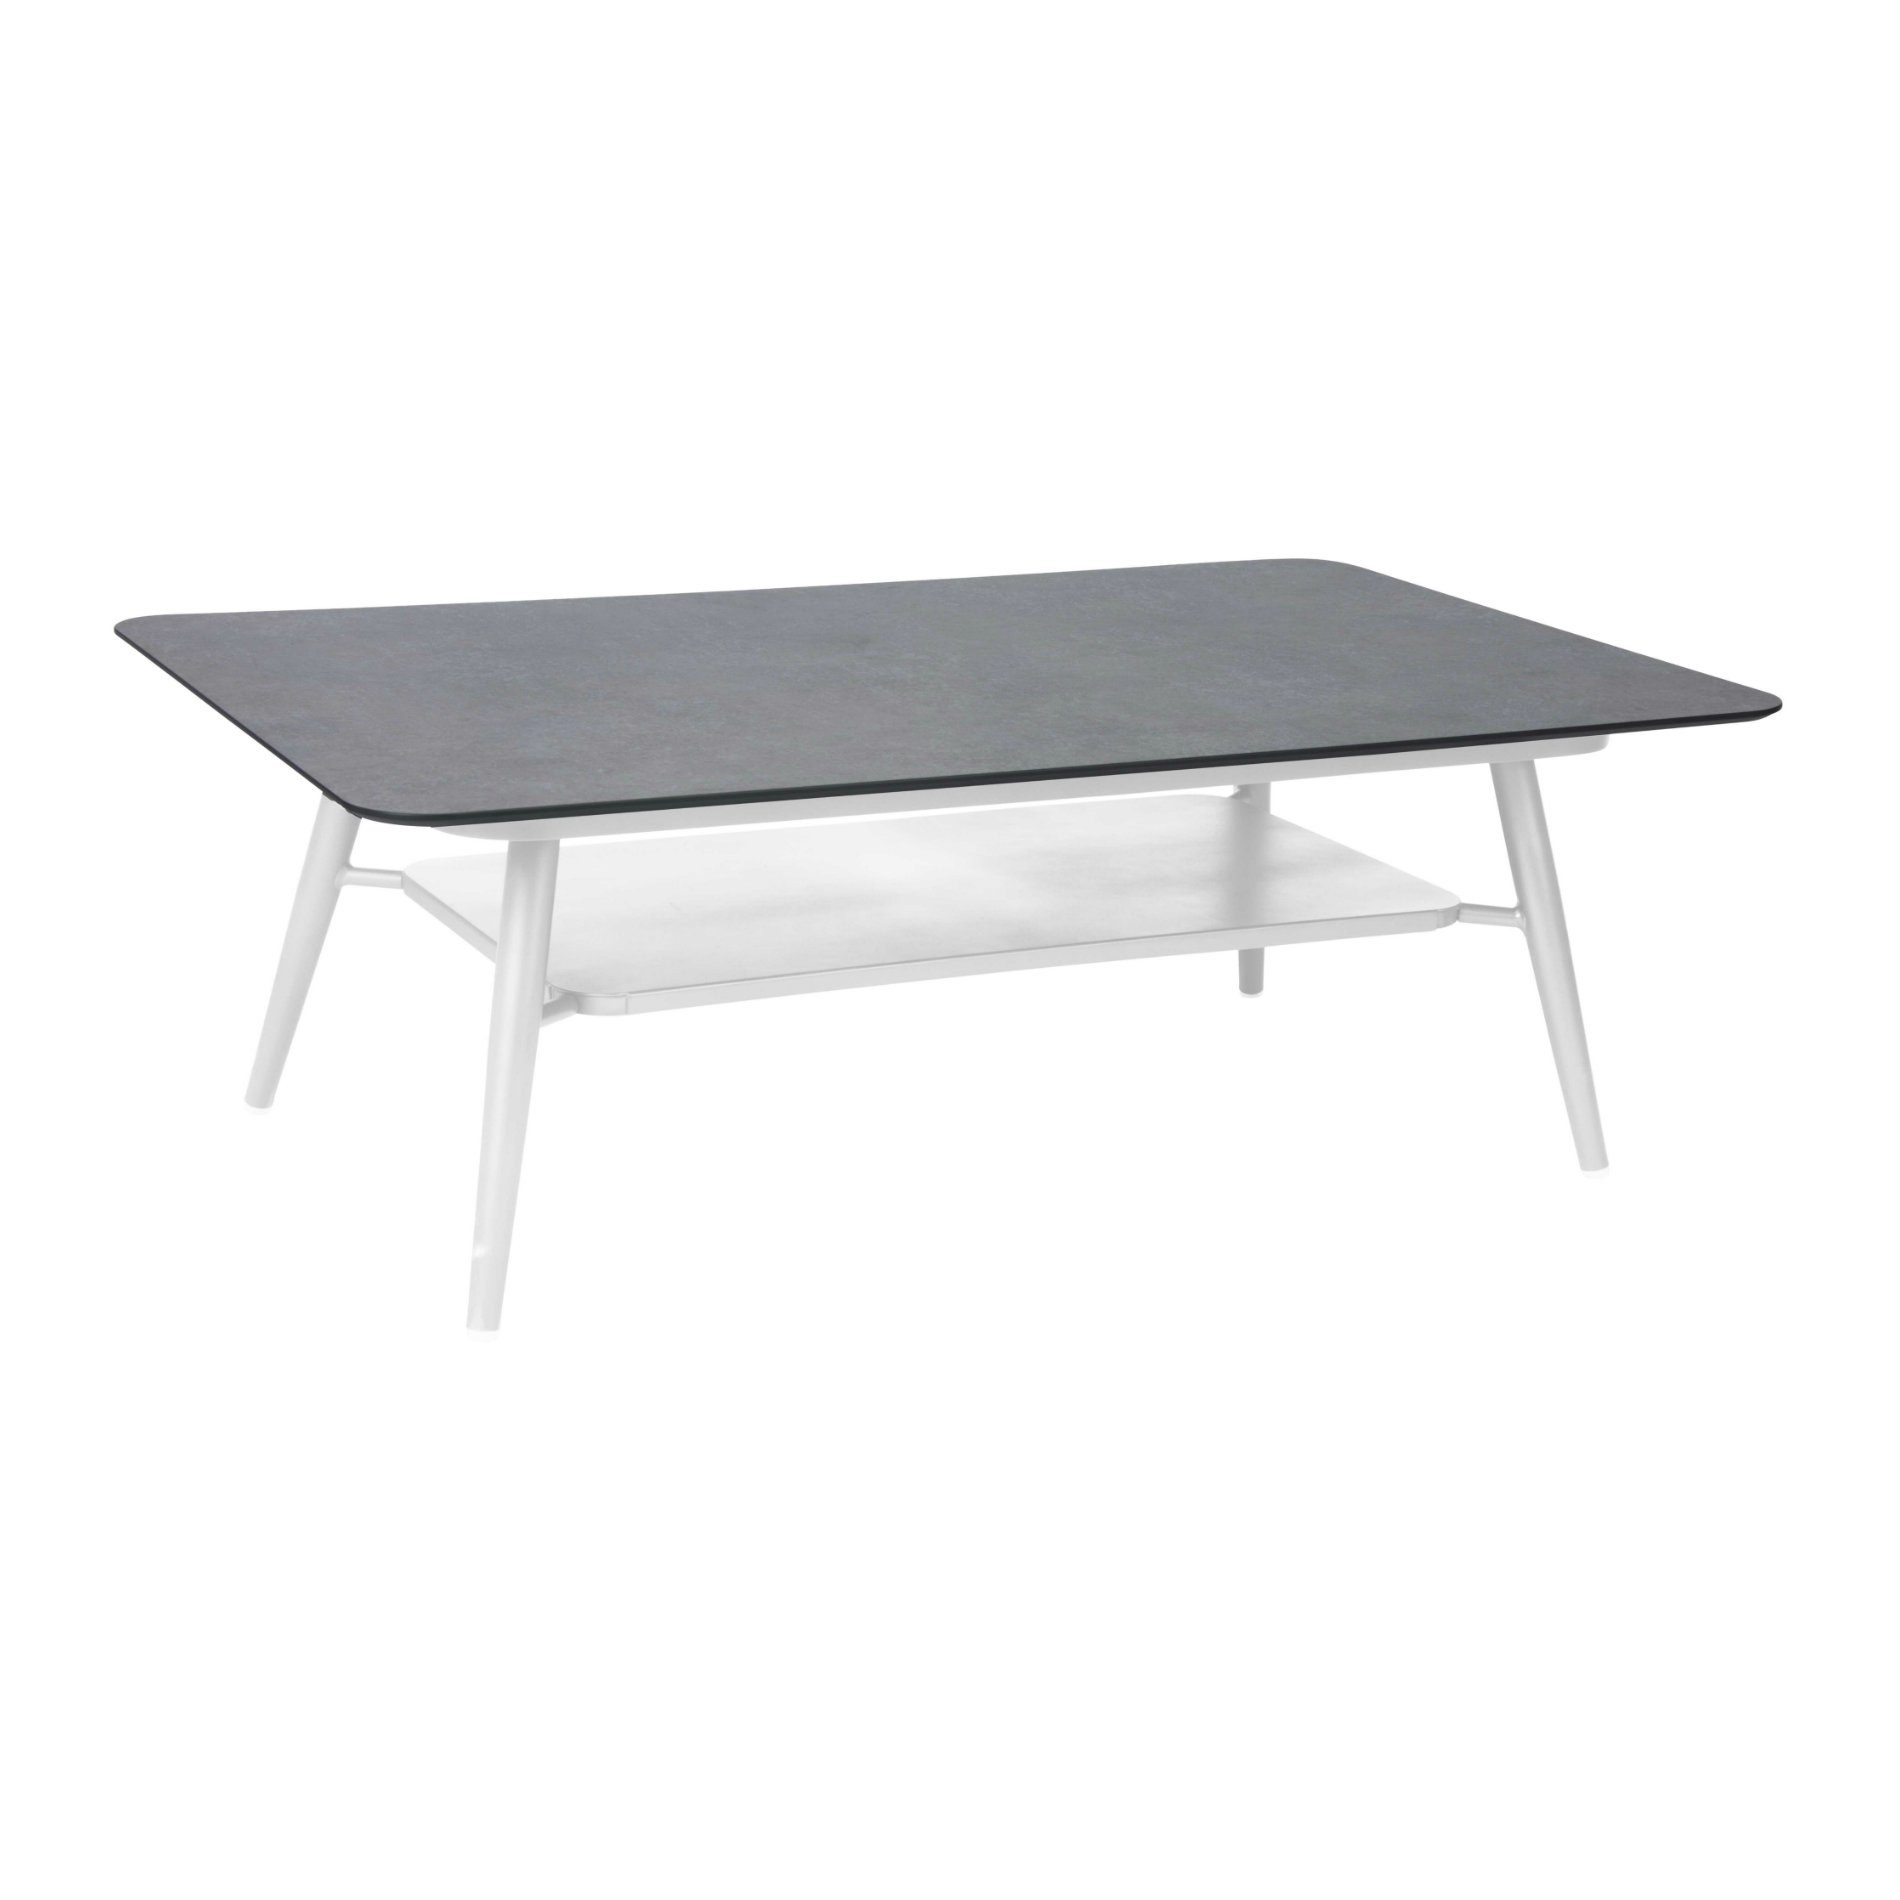 Loungetisch 130x80 cm "Vanda" der Marke Stern, Aluminiumgestell weiß, HPL Tischplatte Dark Marble